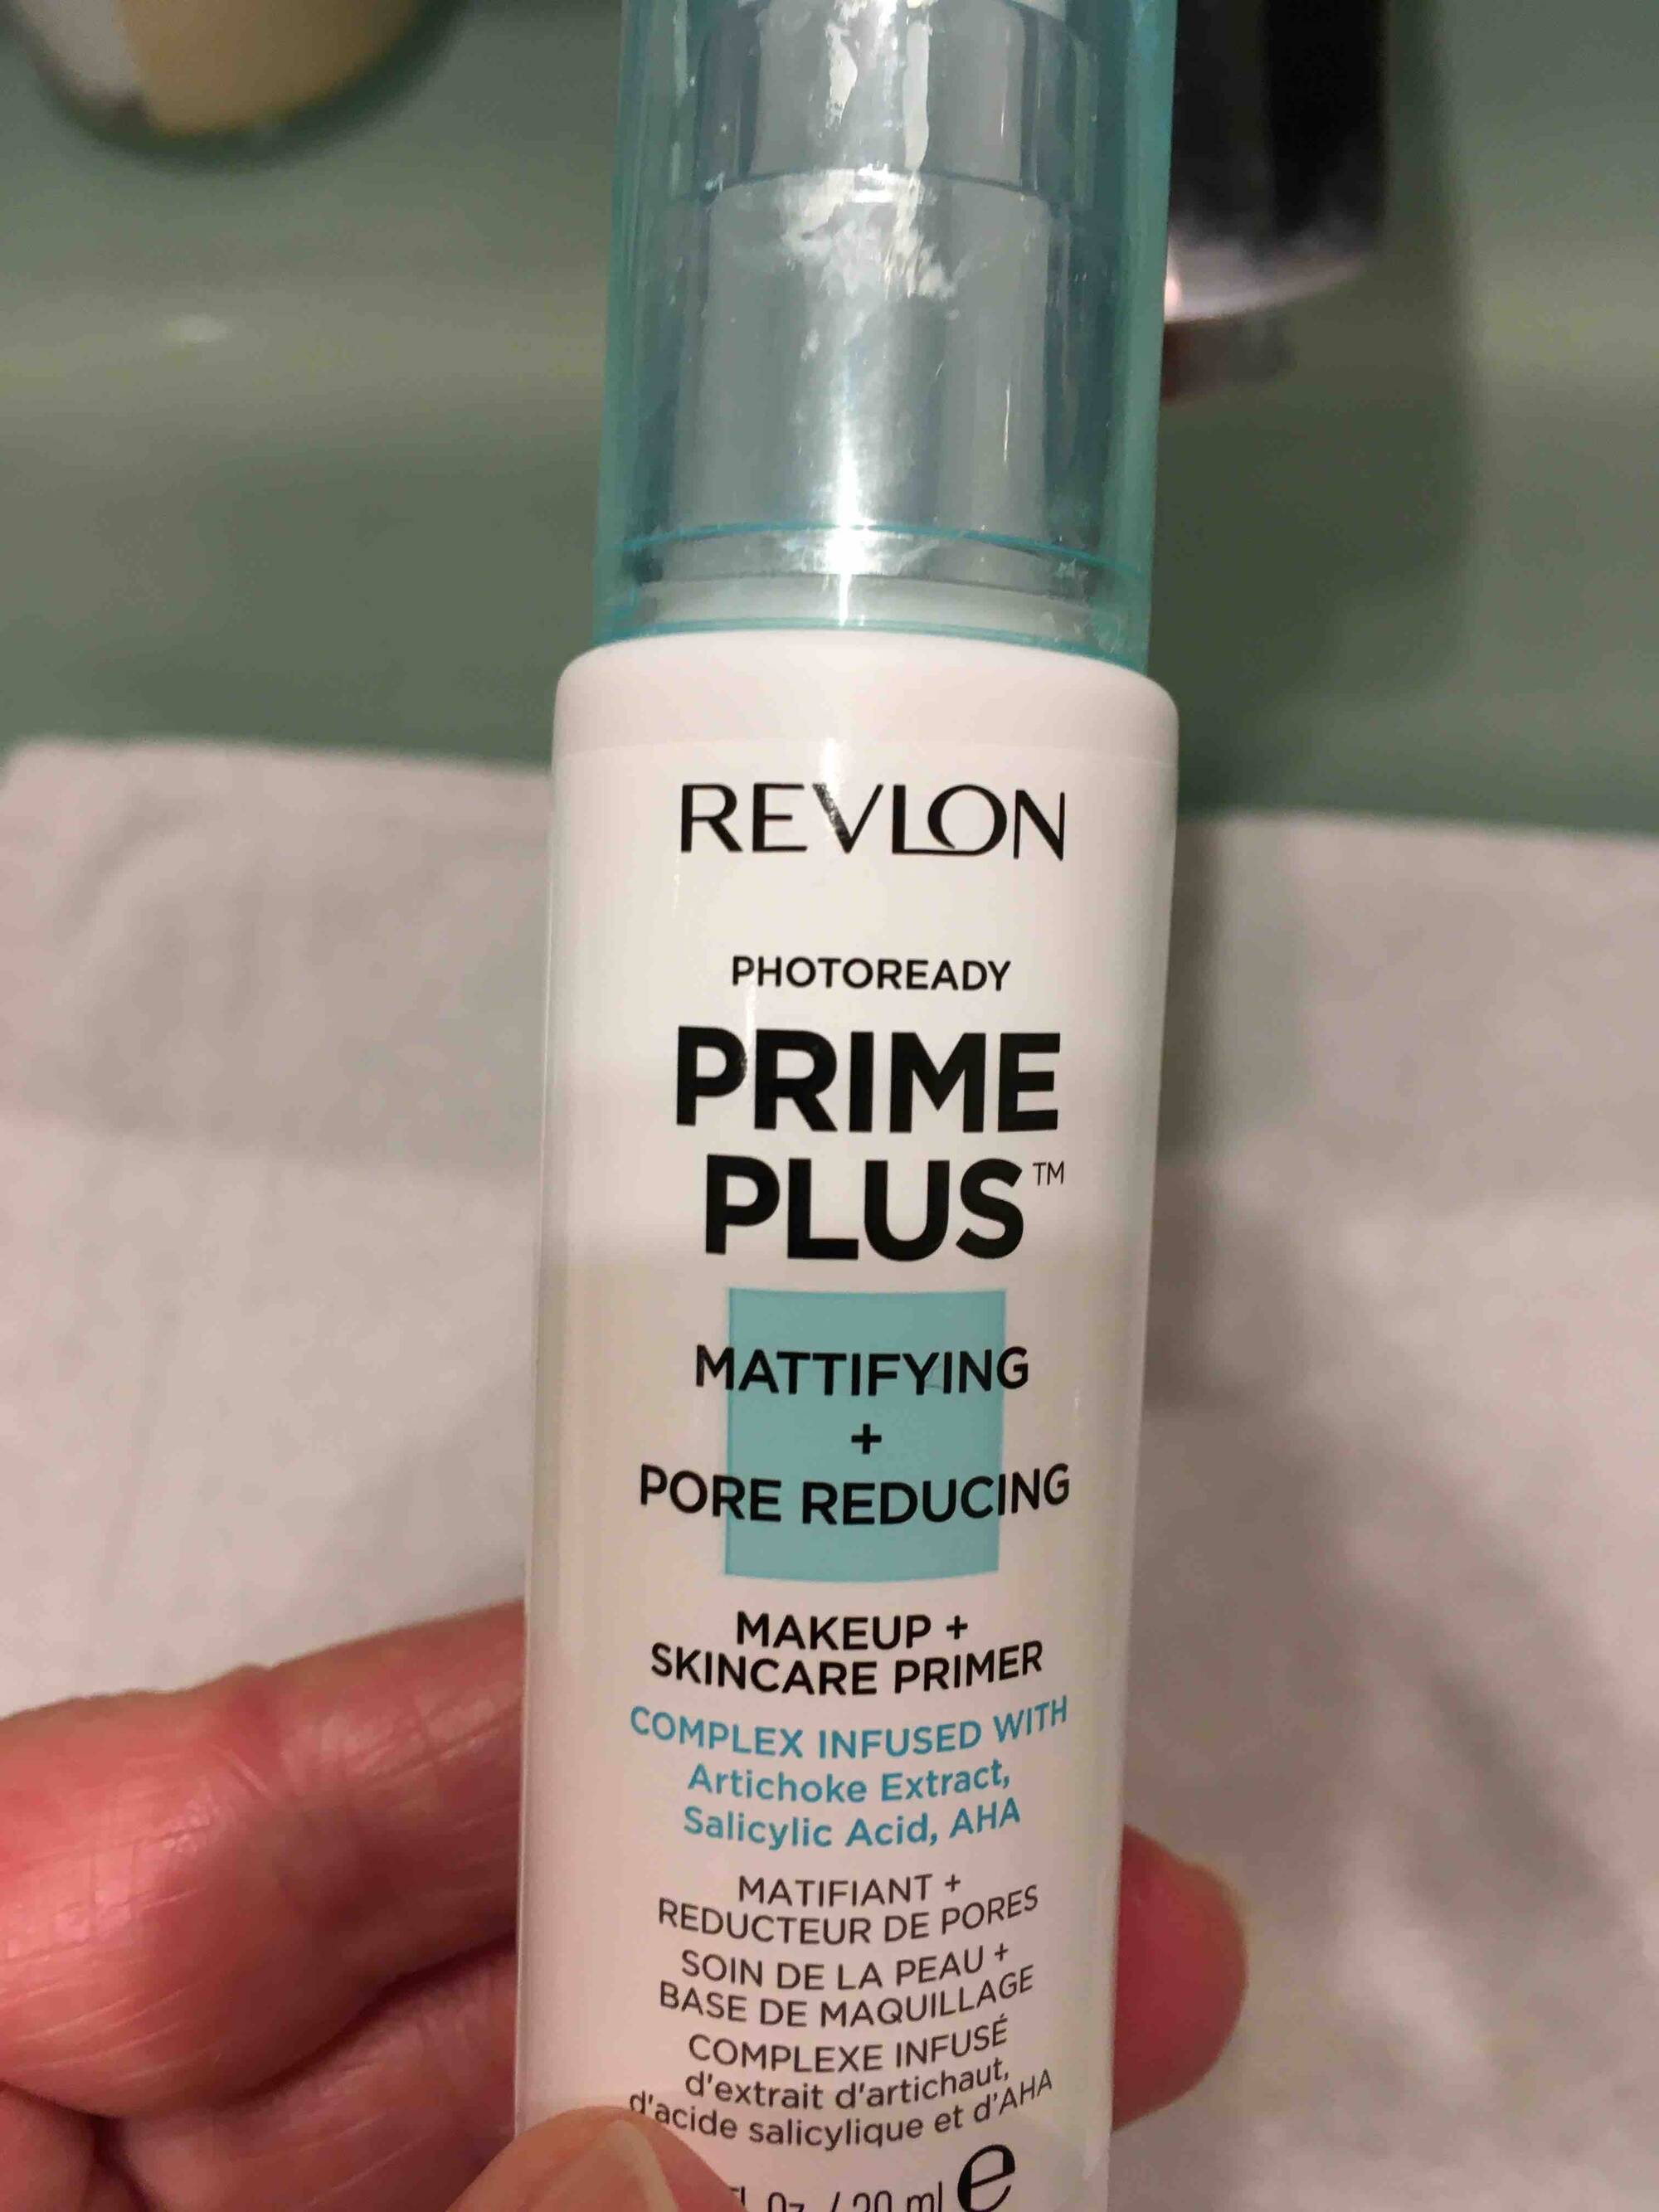 REVLON - Prime plus - Soin de la peau + base de maquillage